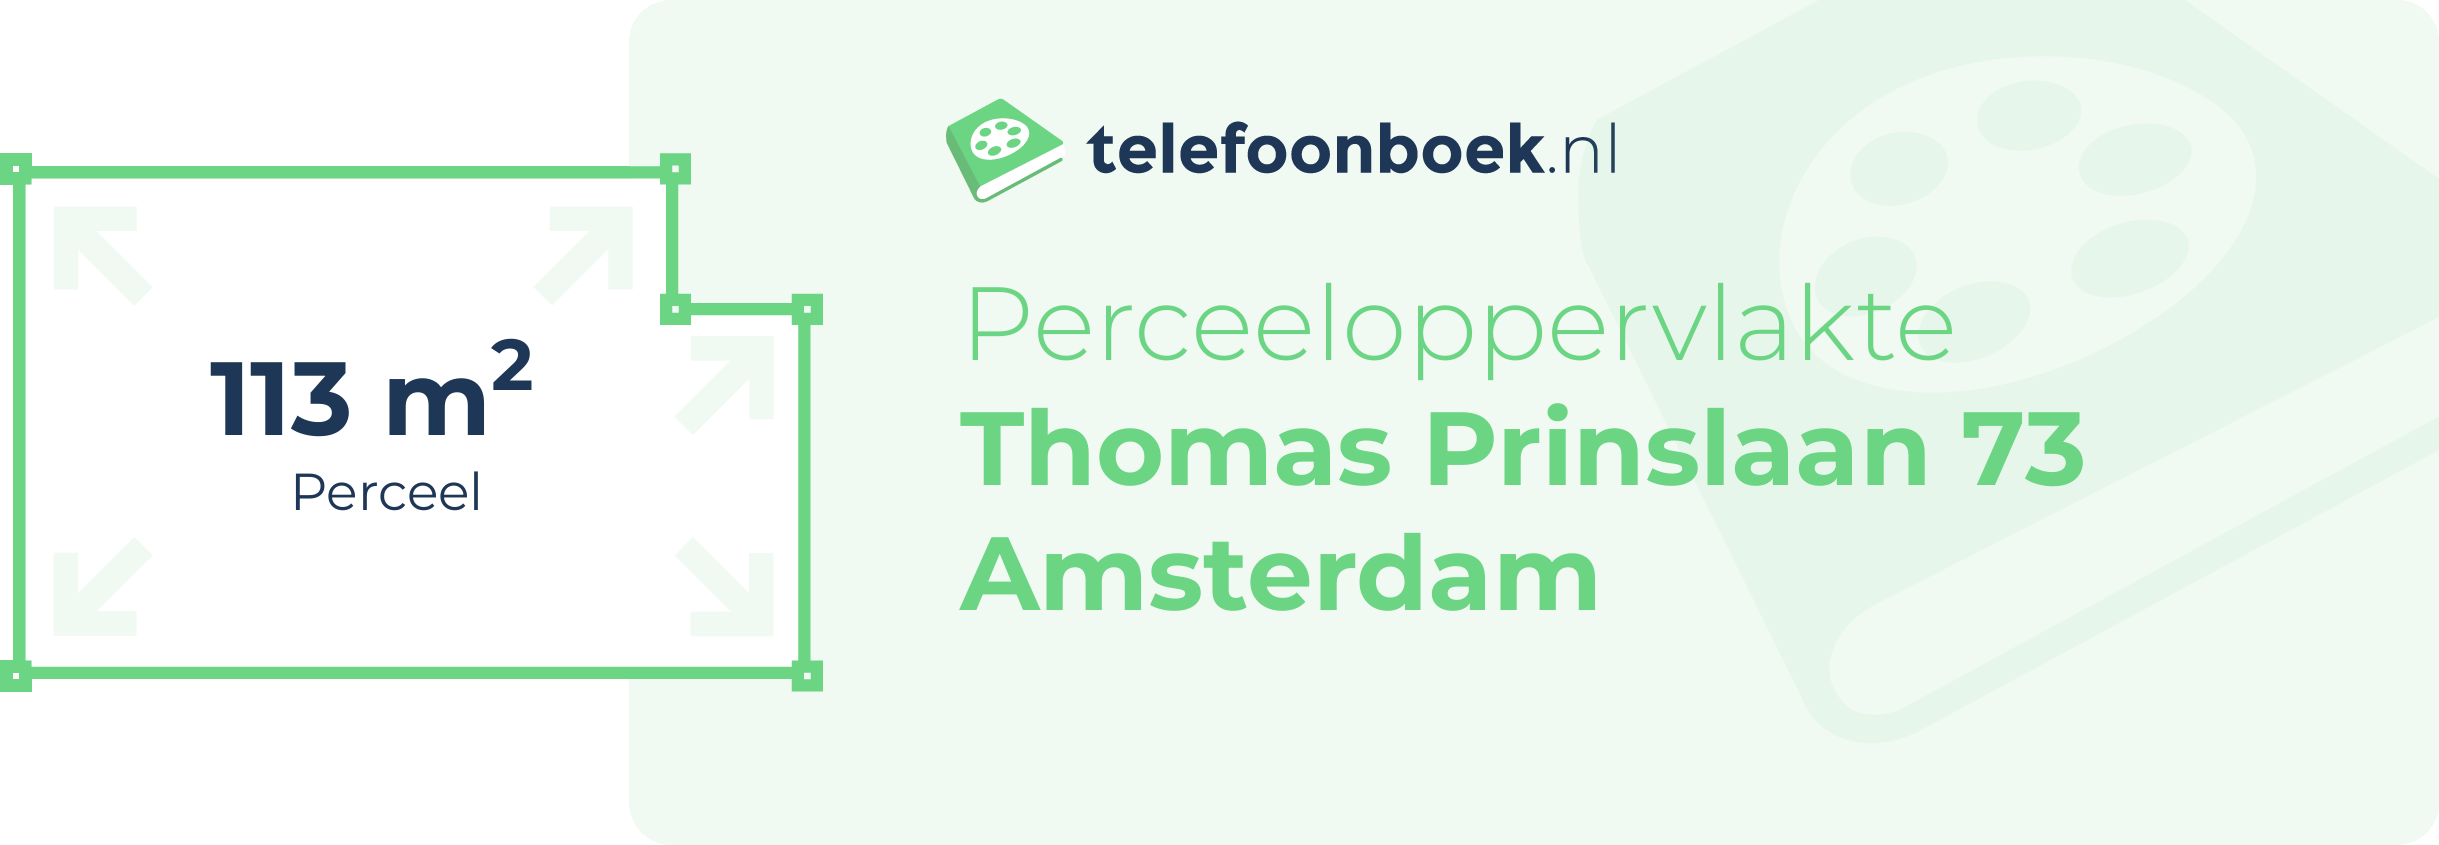 Perceeloppervlakte Thomas Prinslaan 73 Amsterdam